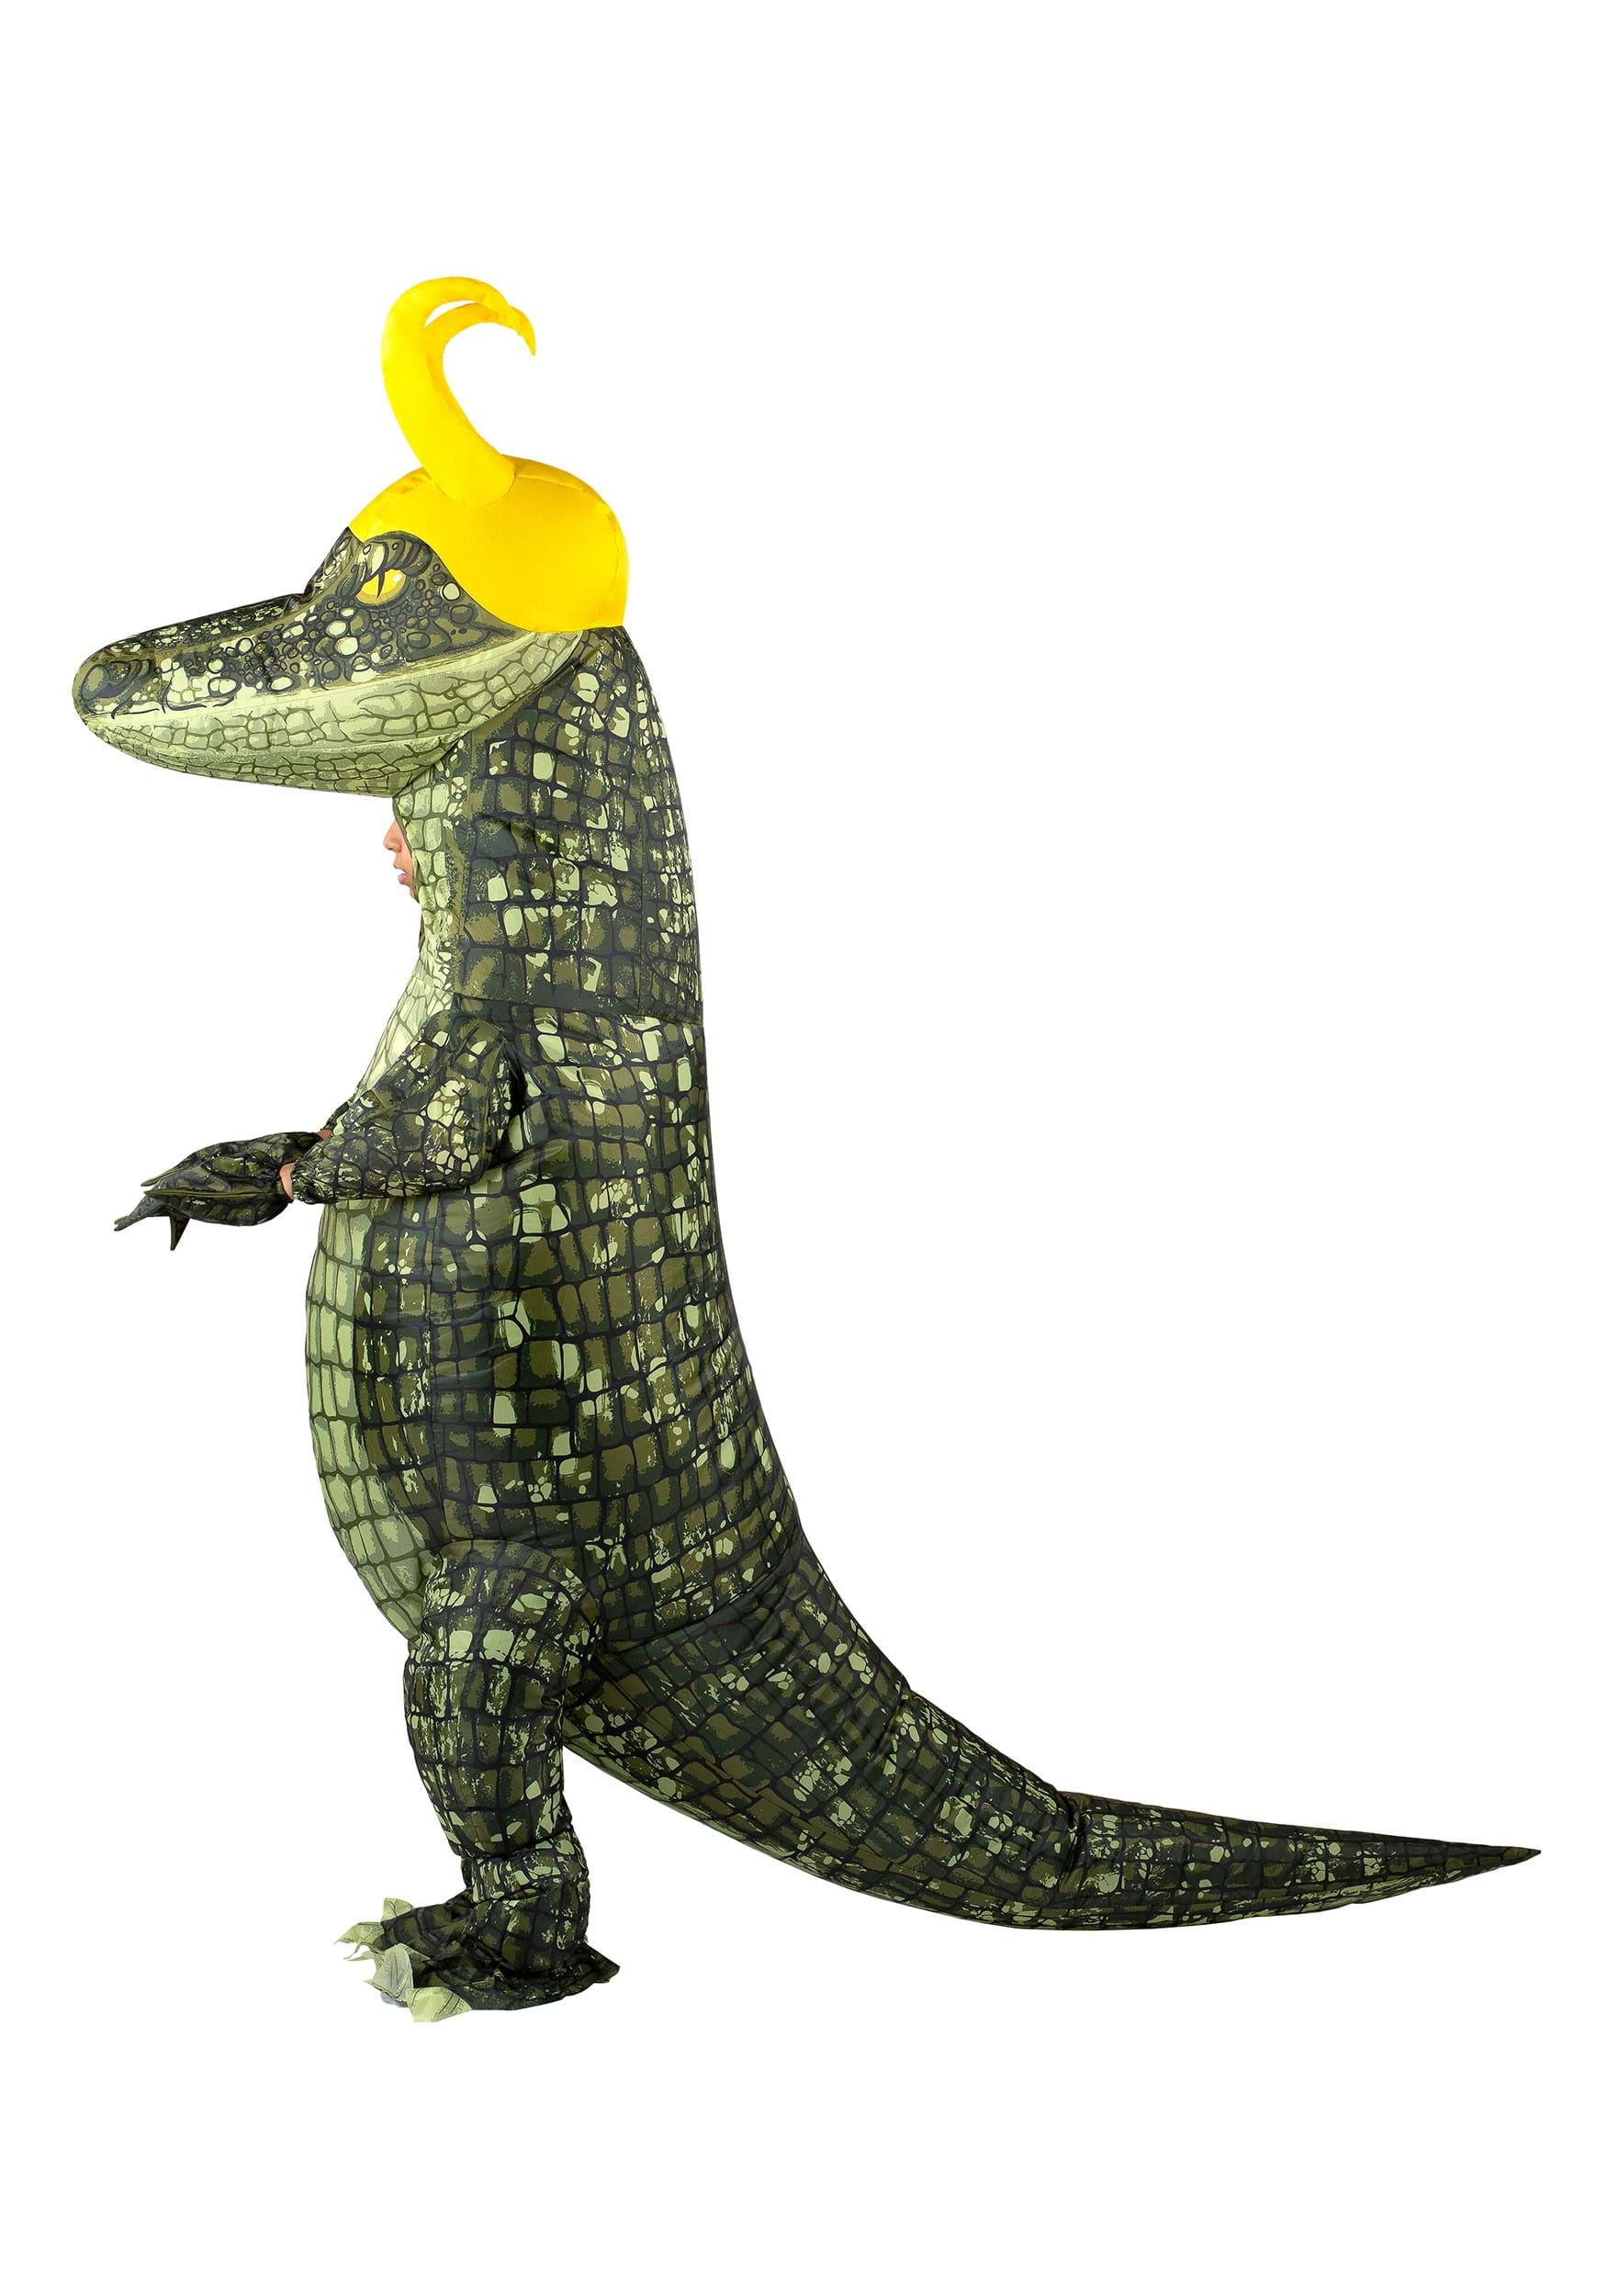 Child Inflatable Alligator Loki Costume , Marvel Costumes